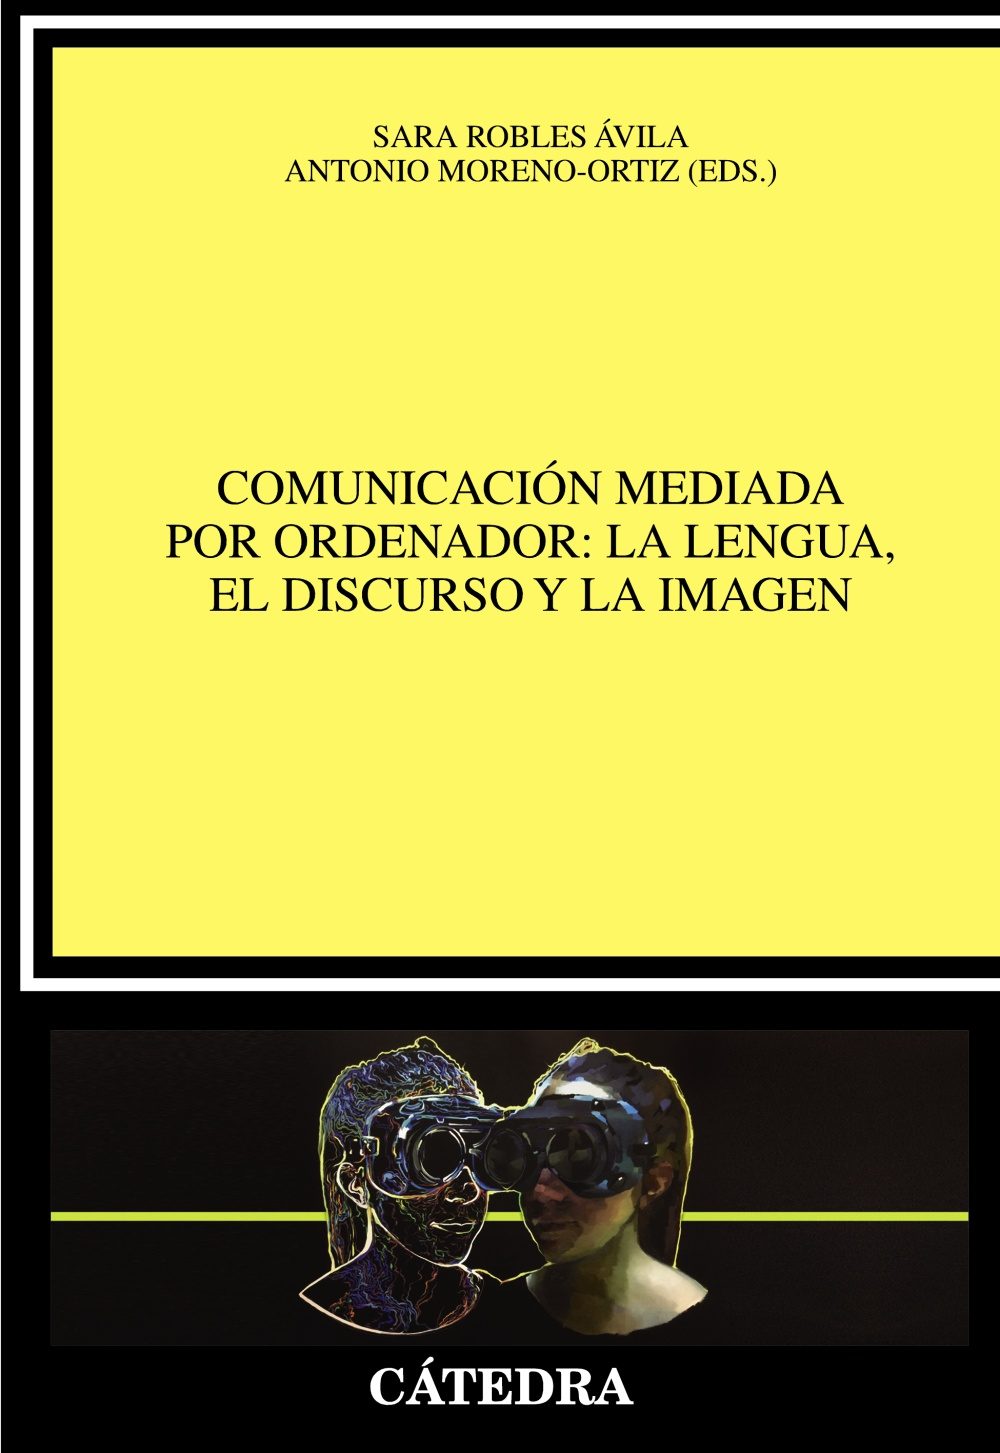 Portada del libro COMUNICACIÓN MEDIADA POR ORDENADOR: La lengua, el discurso y la imagen